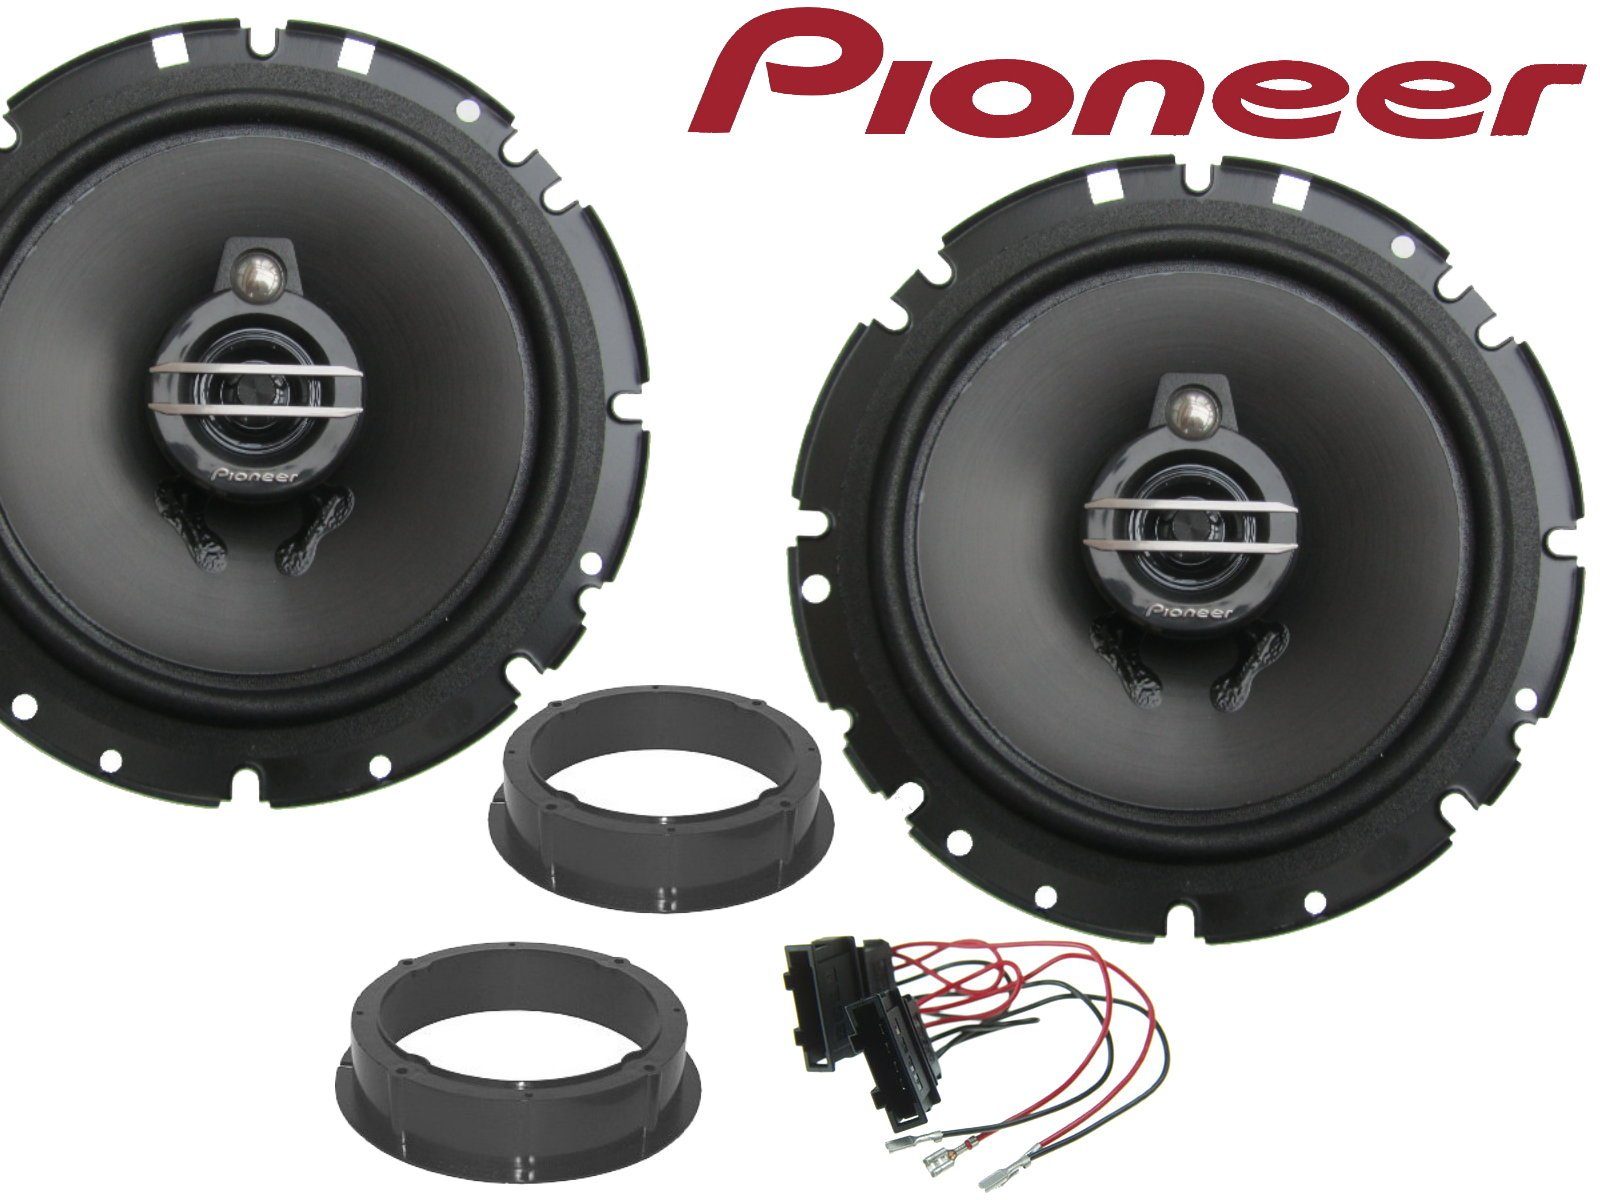 DSX Pioneer 3wege passend für Skoda Octavia 13- 22 Lau Auto-Lautsprecher (40 W)